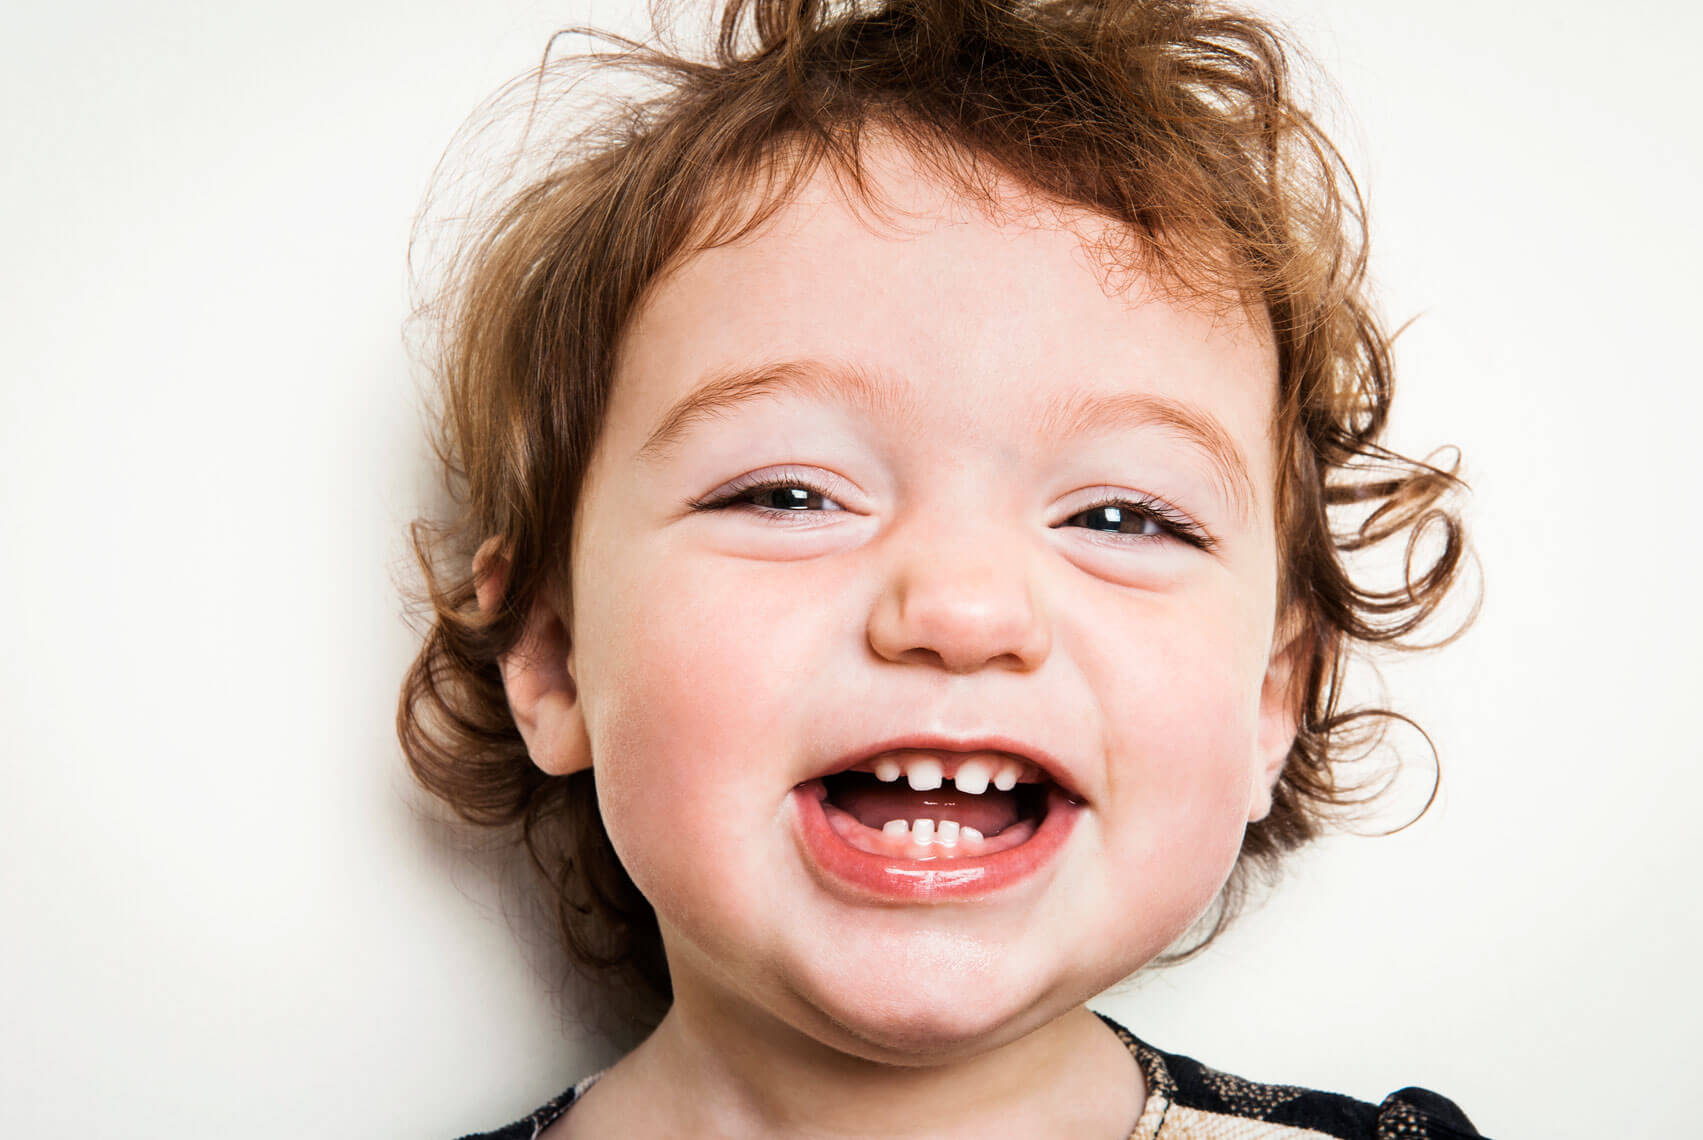  Răng trẻ bị mòn dễ dẫn tới sâu răng